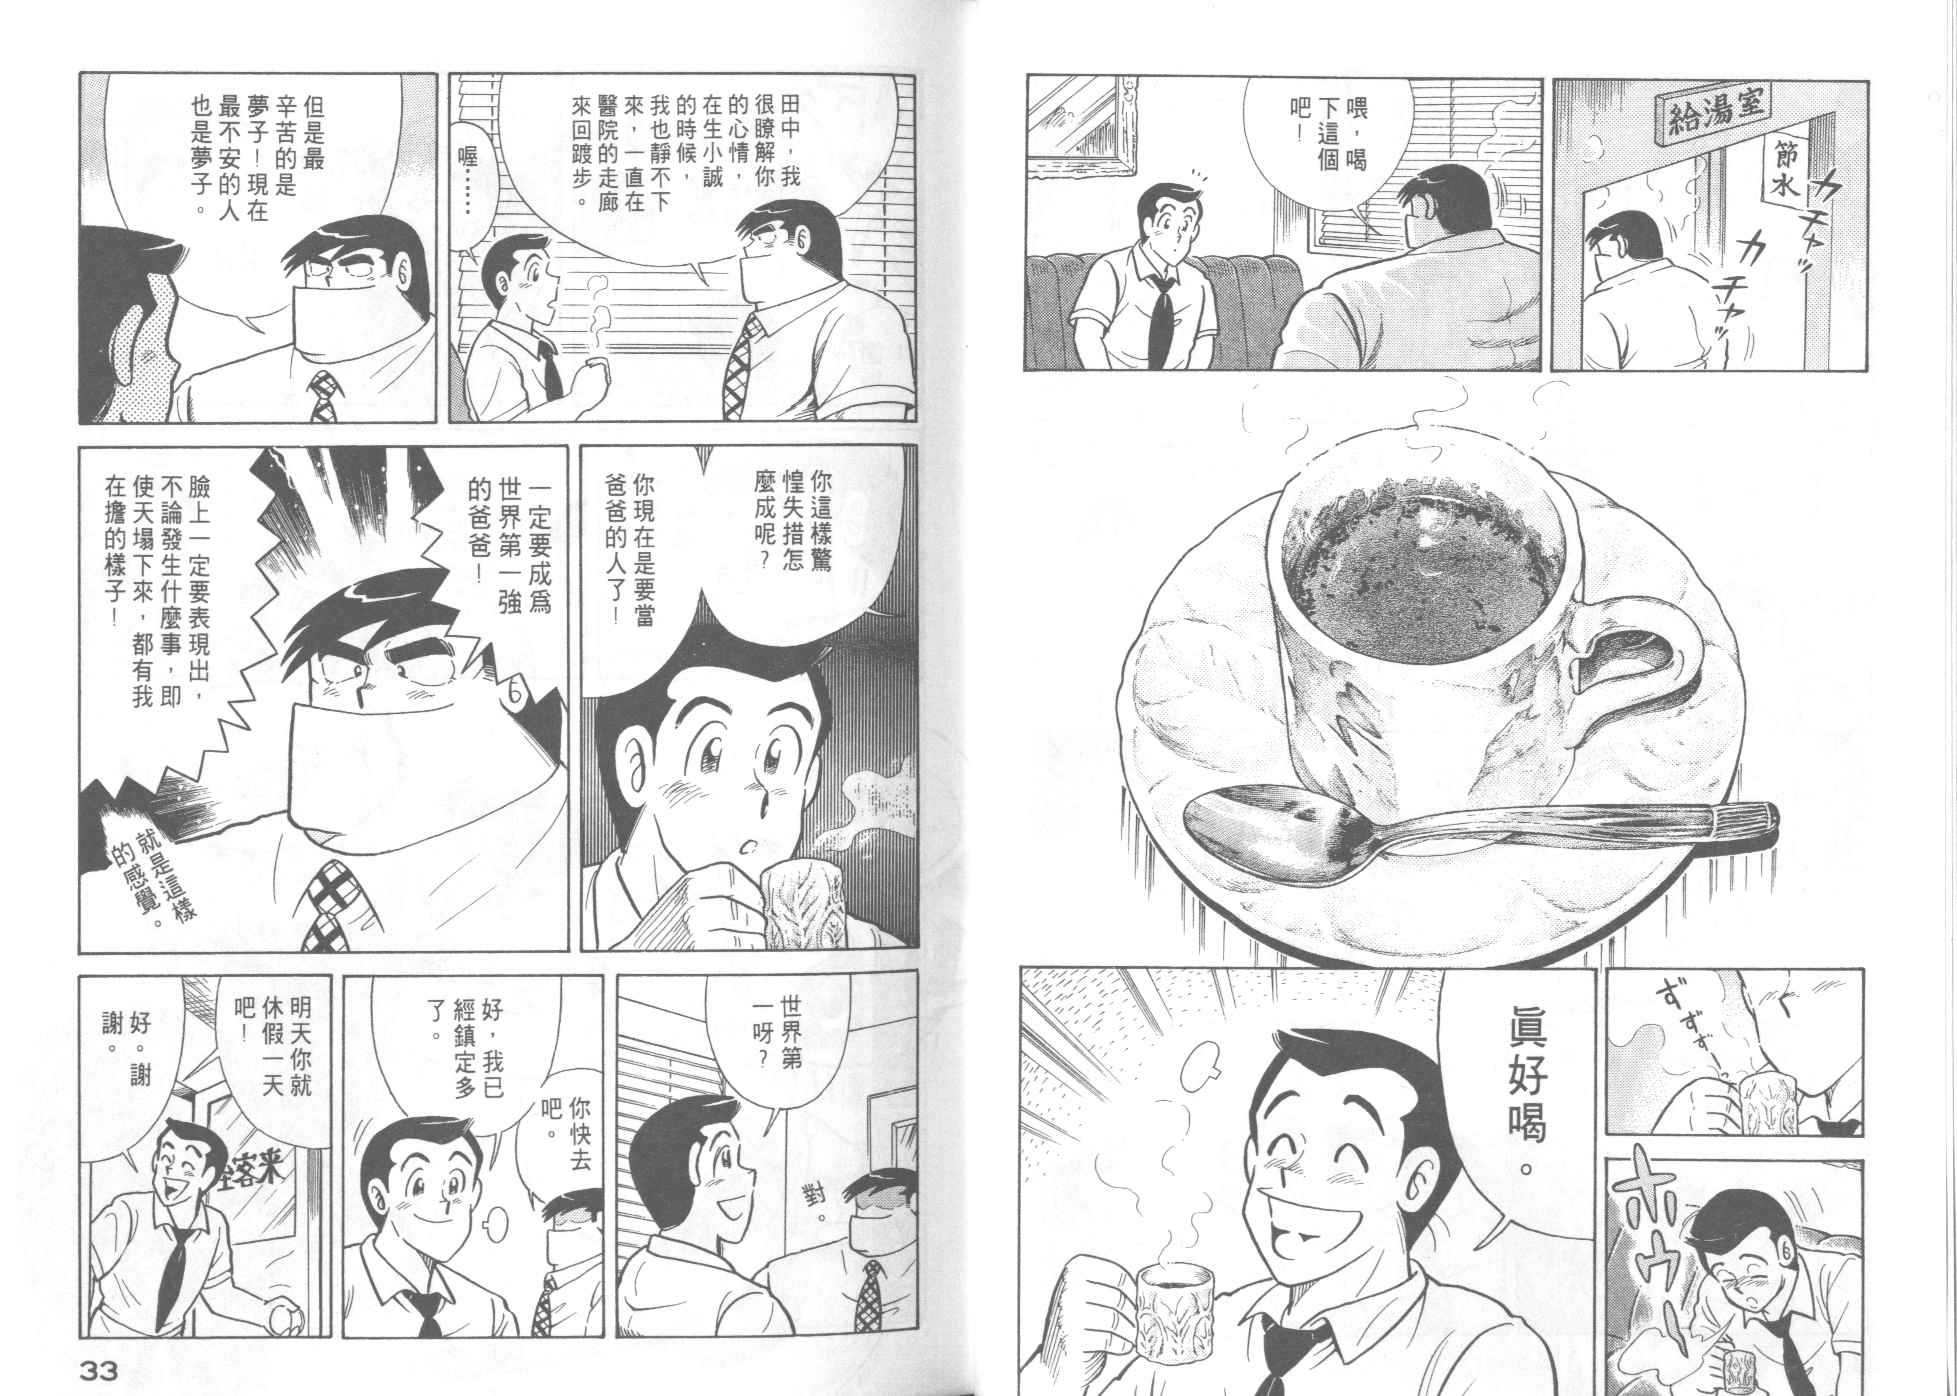 妙廚老爹 Cooking Papa クッキングパパ 漫畫46卷 第18頁 妙廚老爹46卷劇情 看漫畫